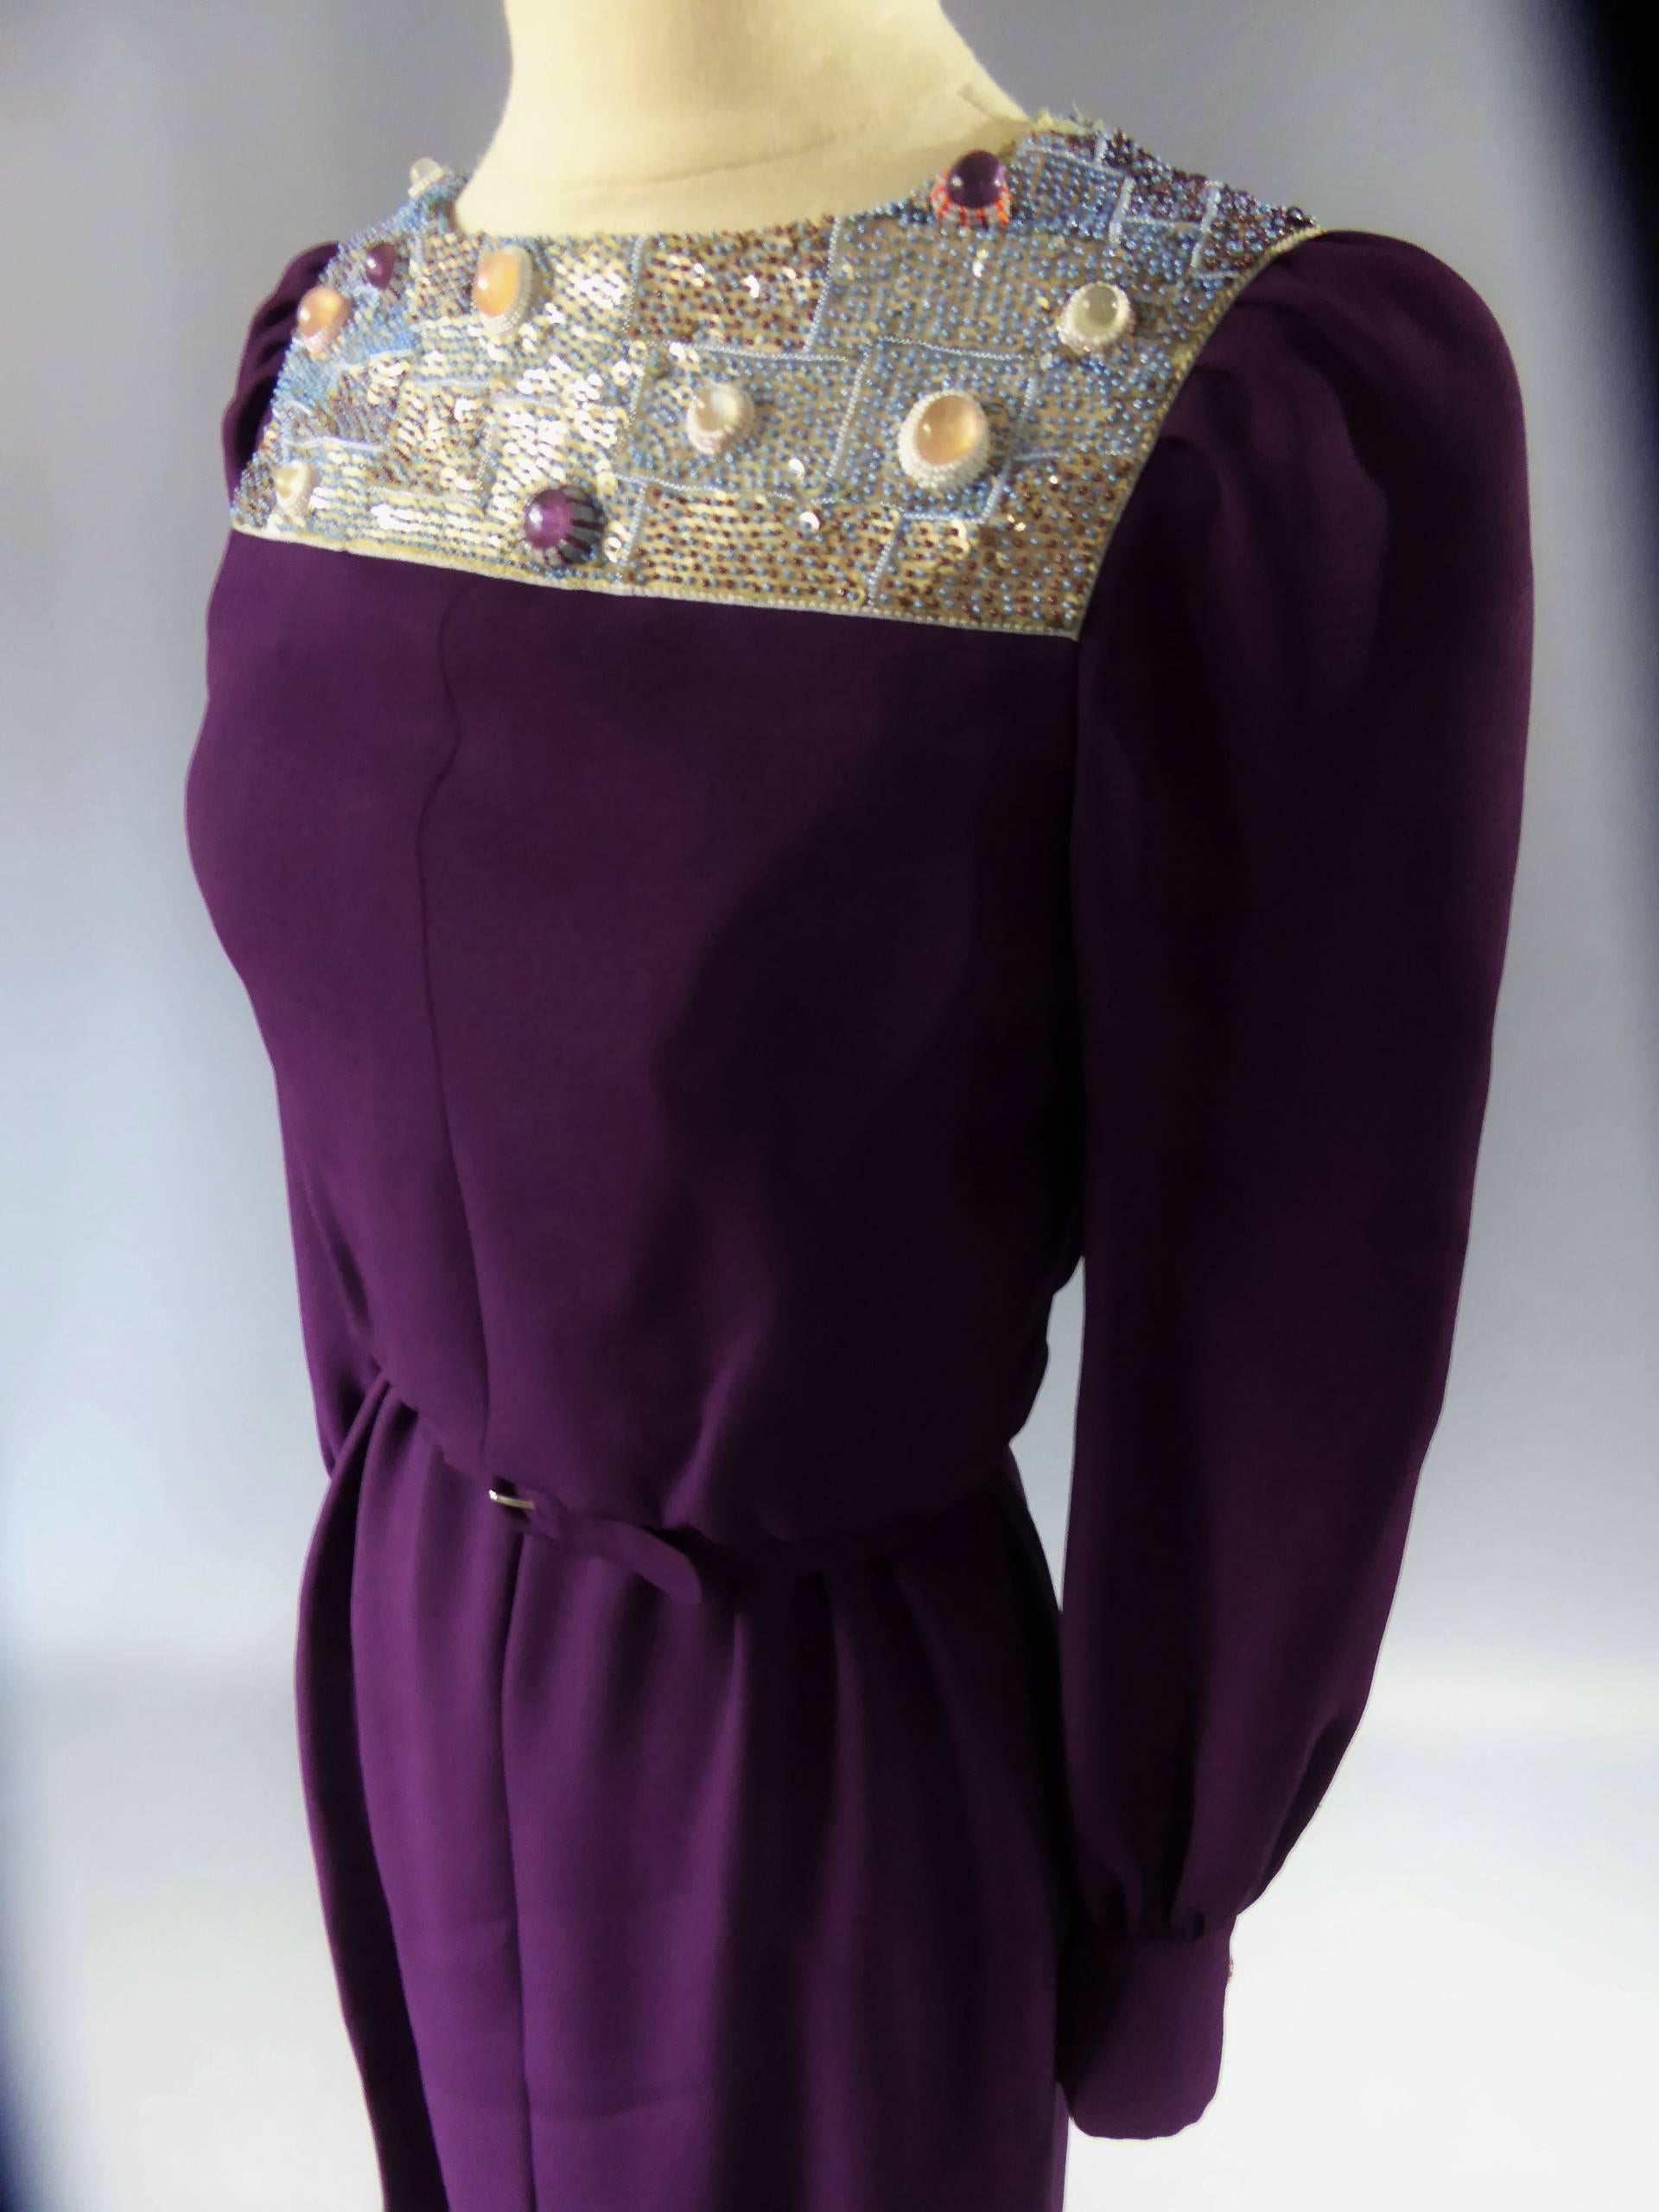 Circa 1970/1975
France

Superbe robe longue en crêpe de soie violet étiquetée Nina Ricci collection Jeune Femme datant des années 70. Le goût monacal et futuriste est à la mode dans les années 70 grâce à Pierre Cardin ou Paco Rabanne. Boutons sur